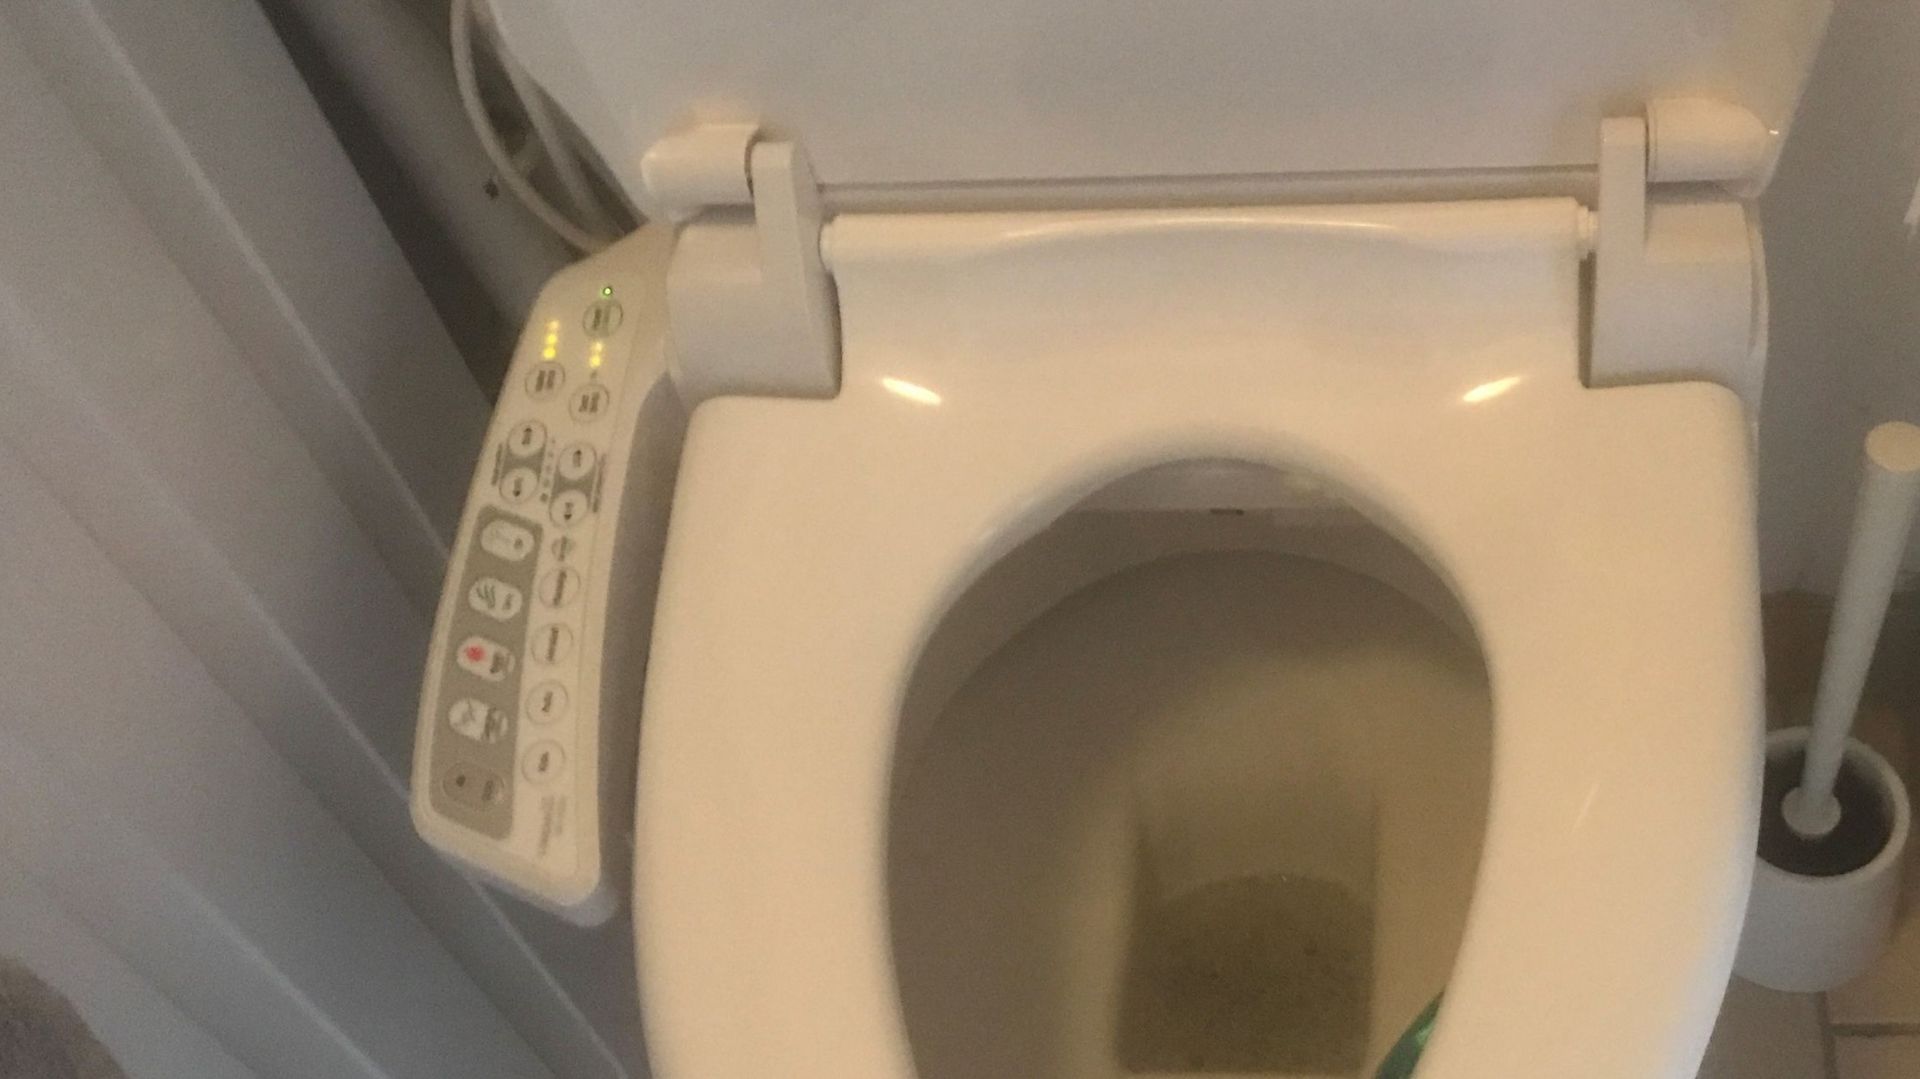 La toilette japonaise (rabattant électrique) est plus sophistiquée que nos toilettes traditionnelles. Elles permettent aussi de se passer de papier.